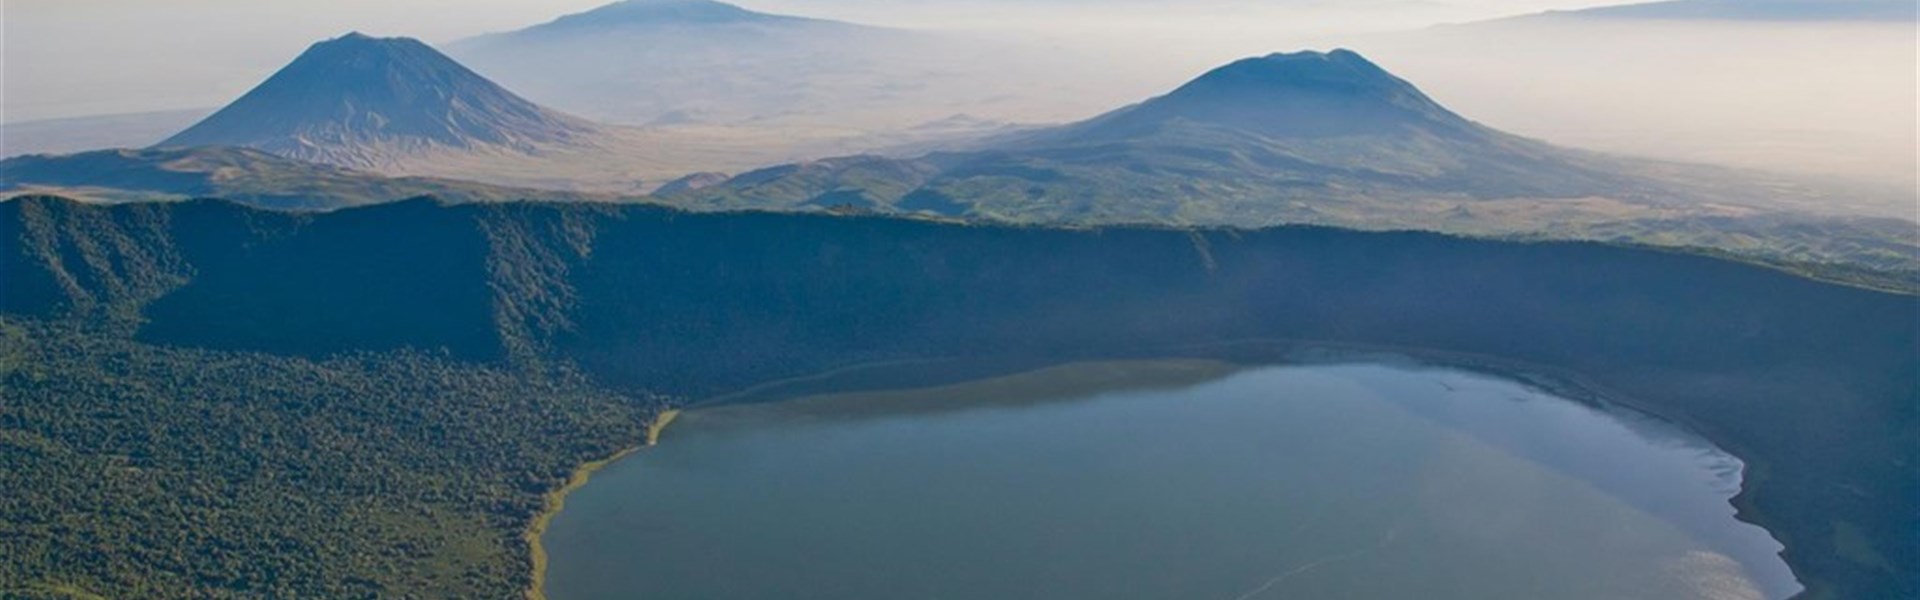 Ngorongoro - Kráter Ngorongoro - Tanzanie -safari